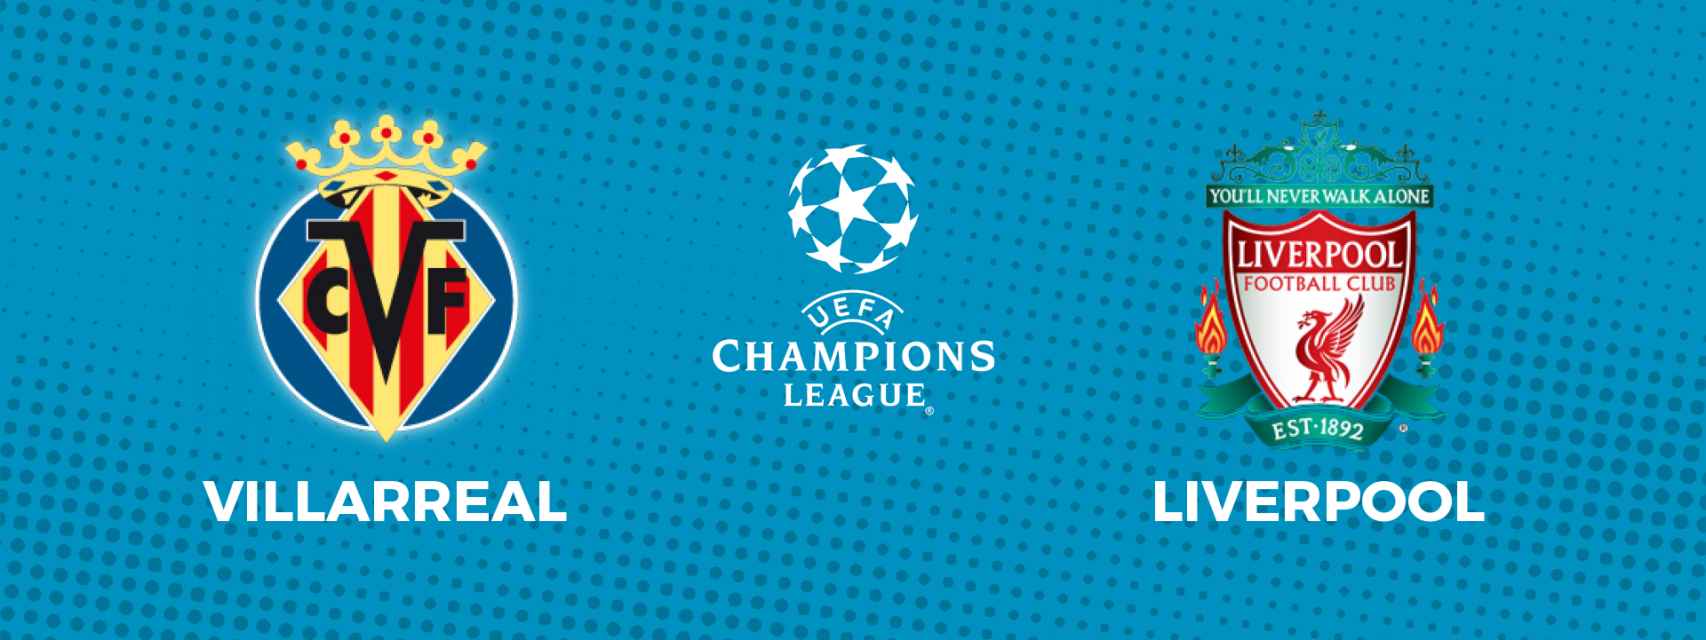 Villarreal - Liverpool: siga la semifinal de Champions League, en directo